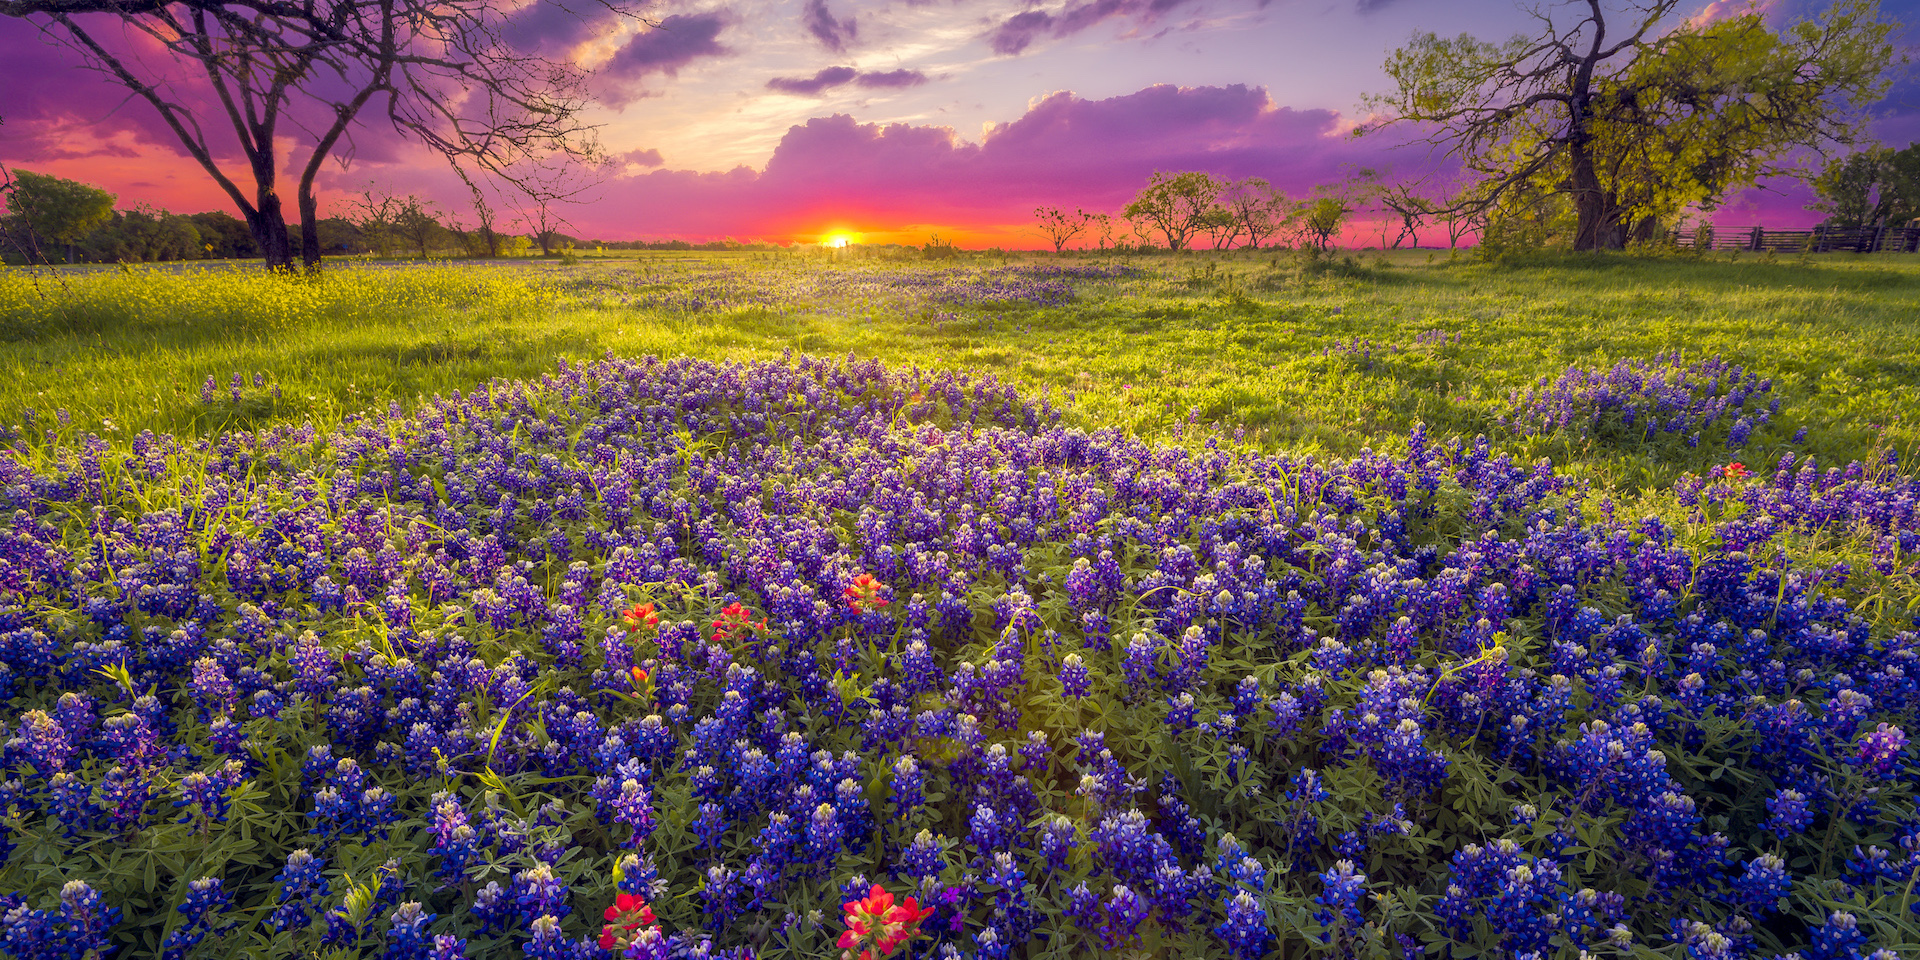 bluebonnet flowers in a field at sunrise